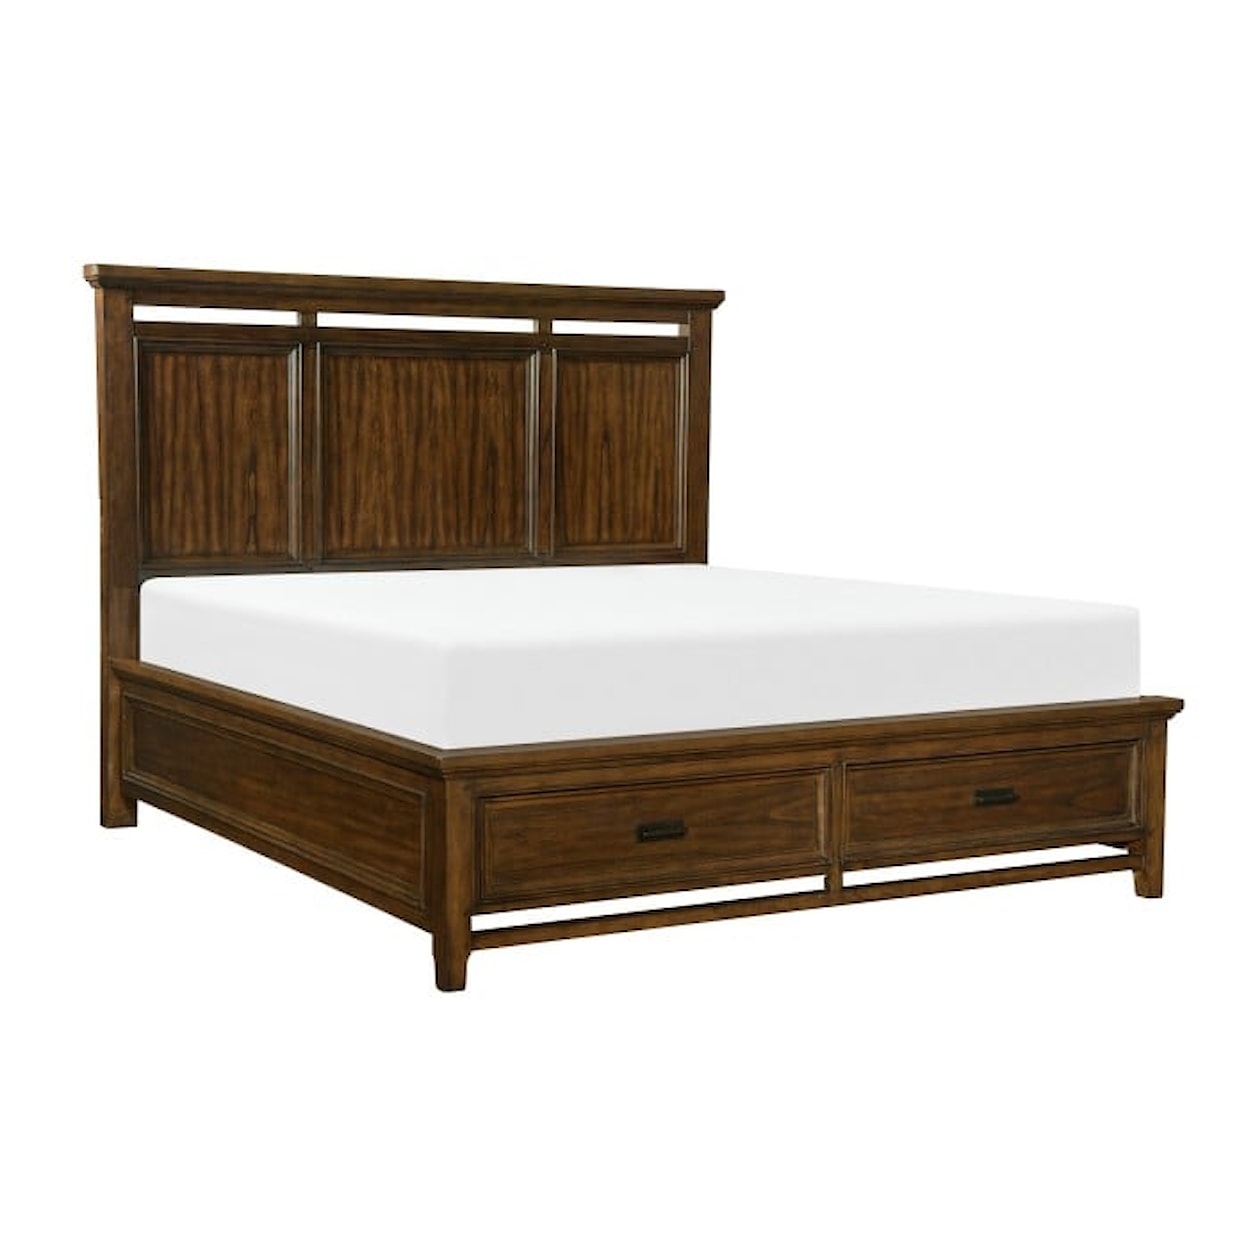 Homelegance Furniture Frazier Park King  Bed with FB Storage